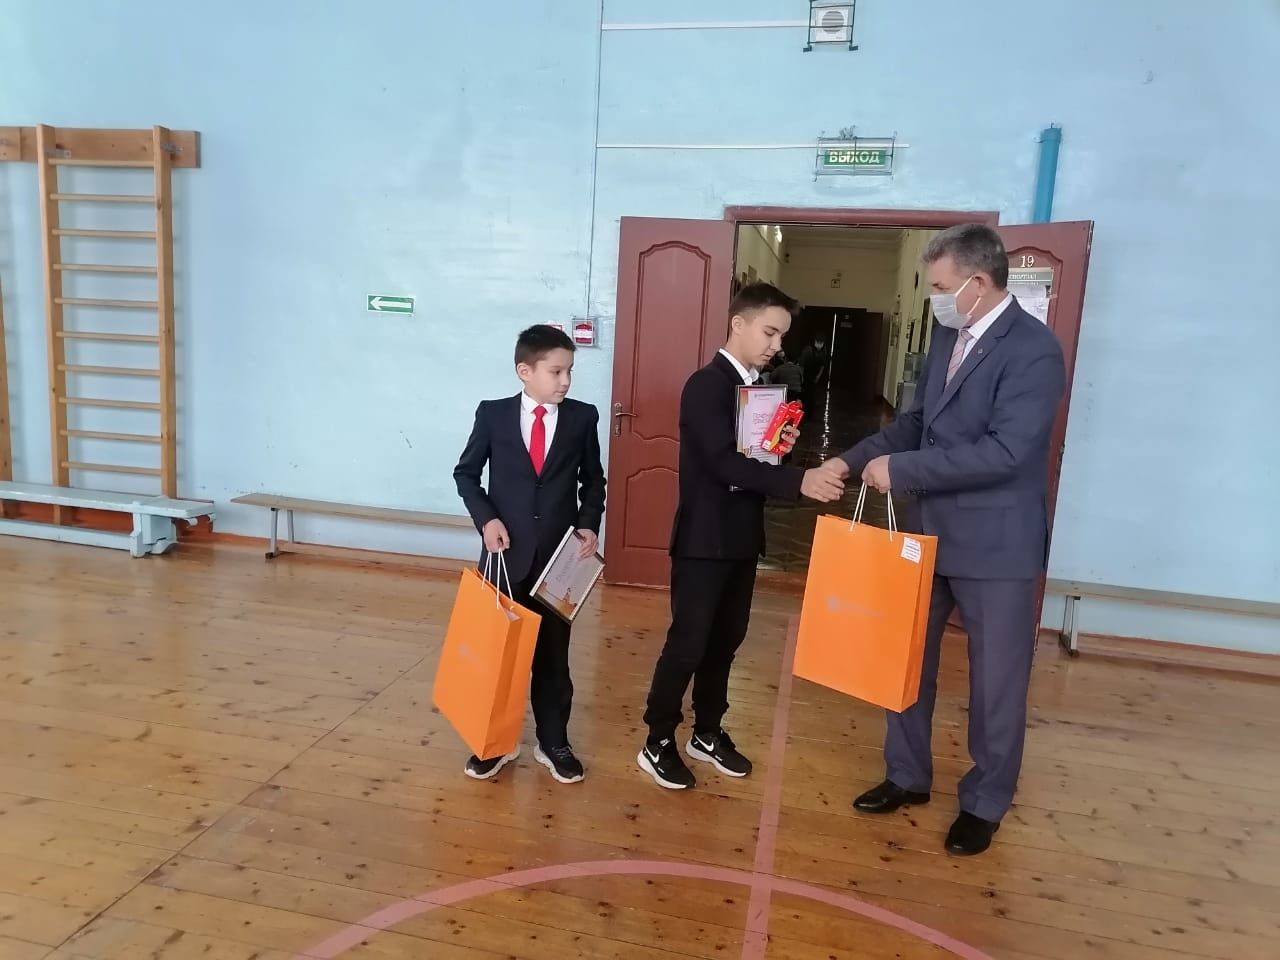 Ученики Староильдеряковской школы стали призерами «Солнечного зайчика»